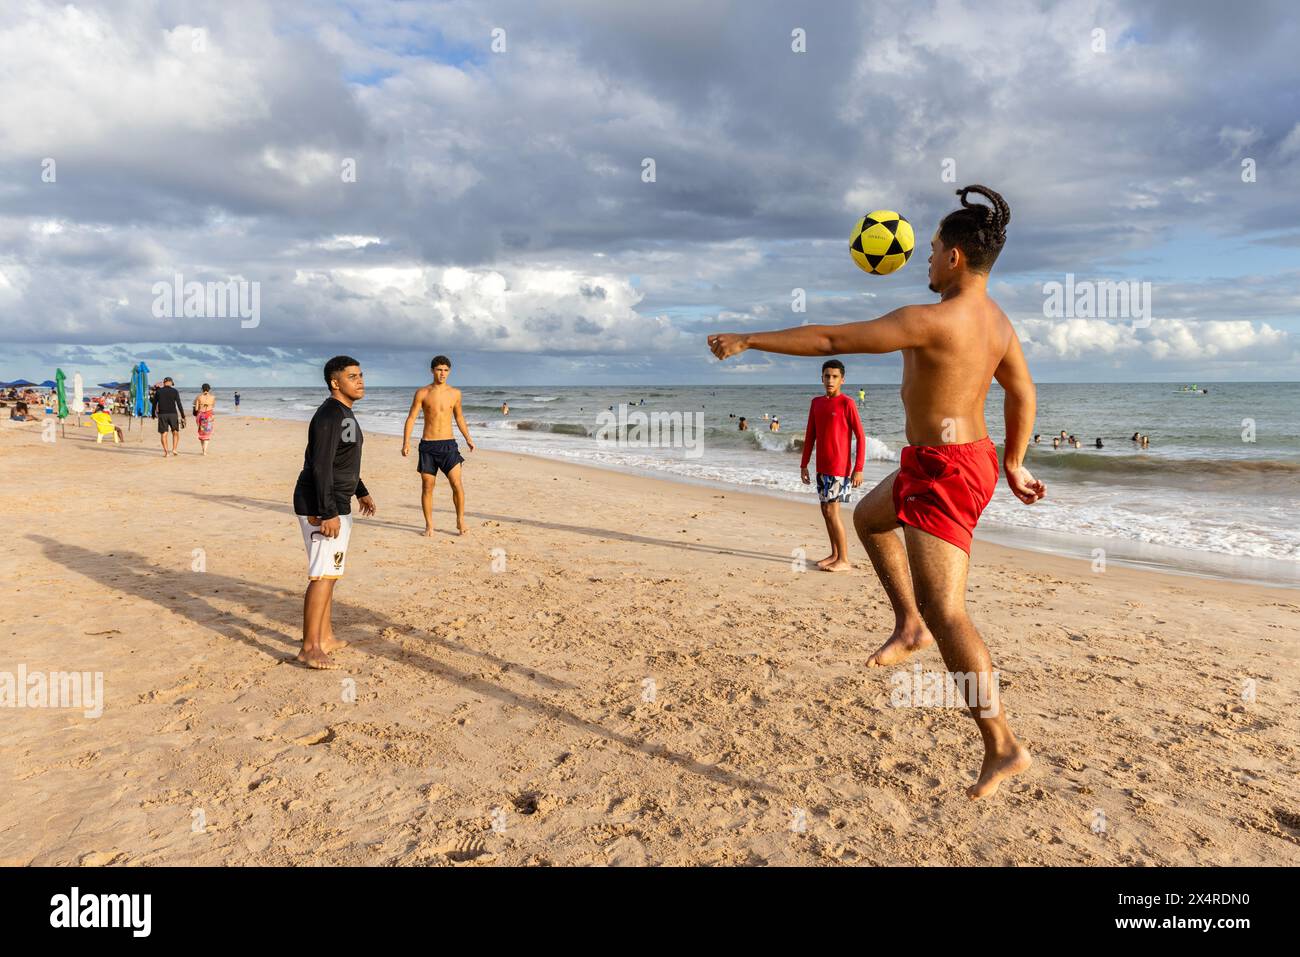 Les gars jouent au football sur la plage d'Itacimirim, Praia de Itacimirim, Salvador, Bahia, Brésil Banque D'Images